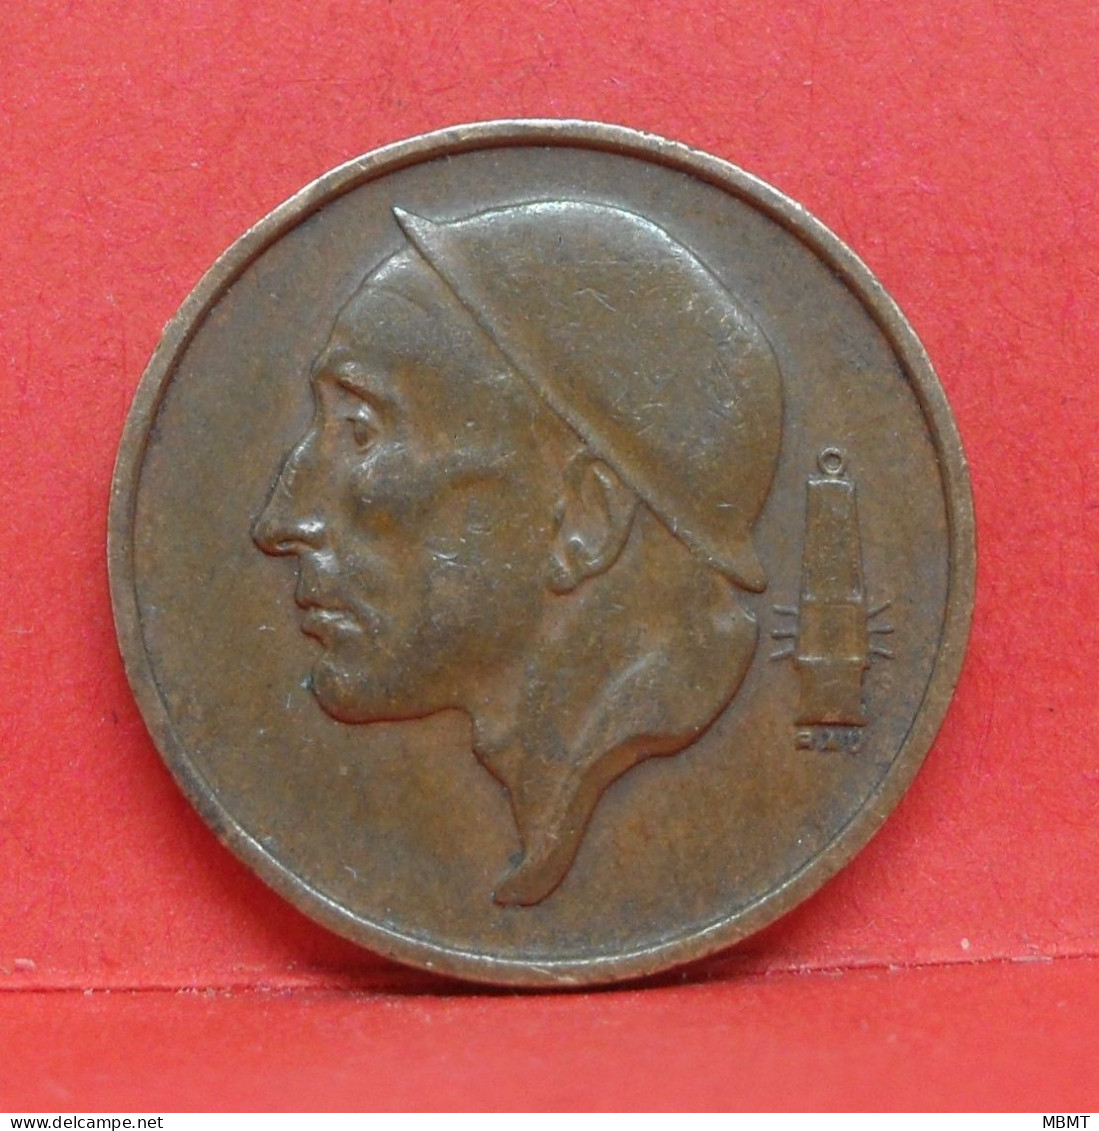 50 Centimes 1956 - TTB - Pièce Monnaie Belgie - Article N°1878 - 50 Cent